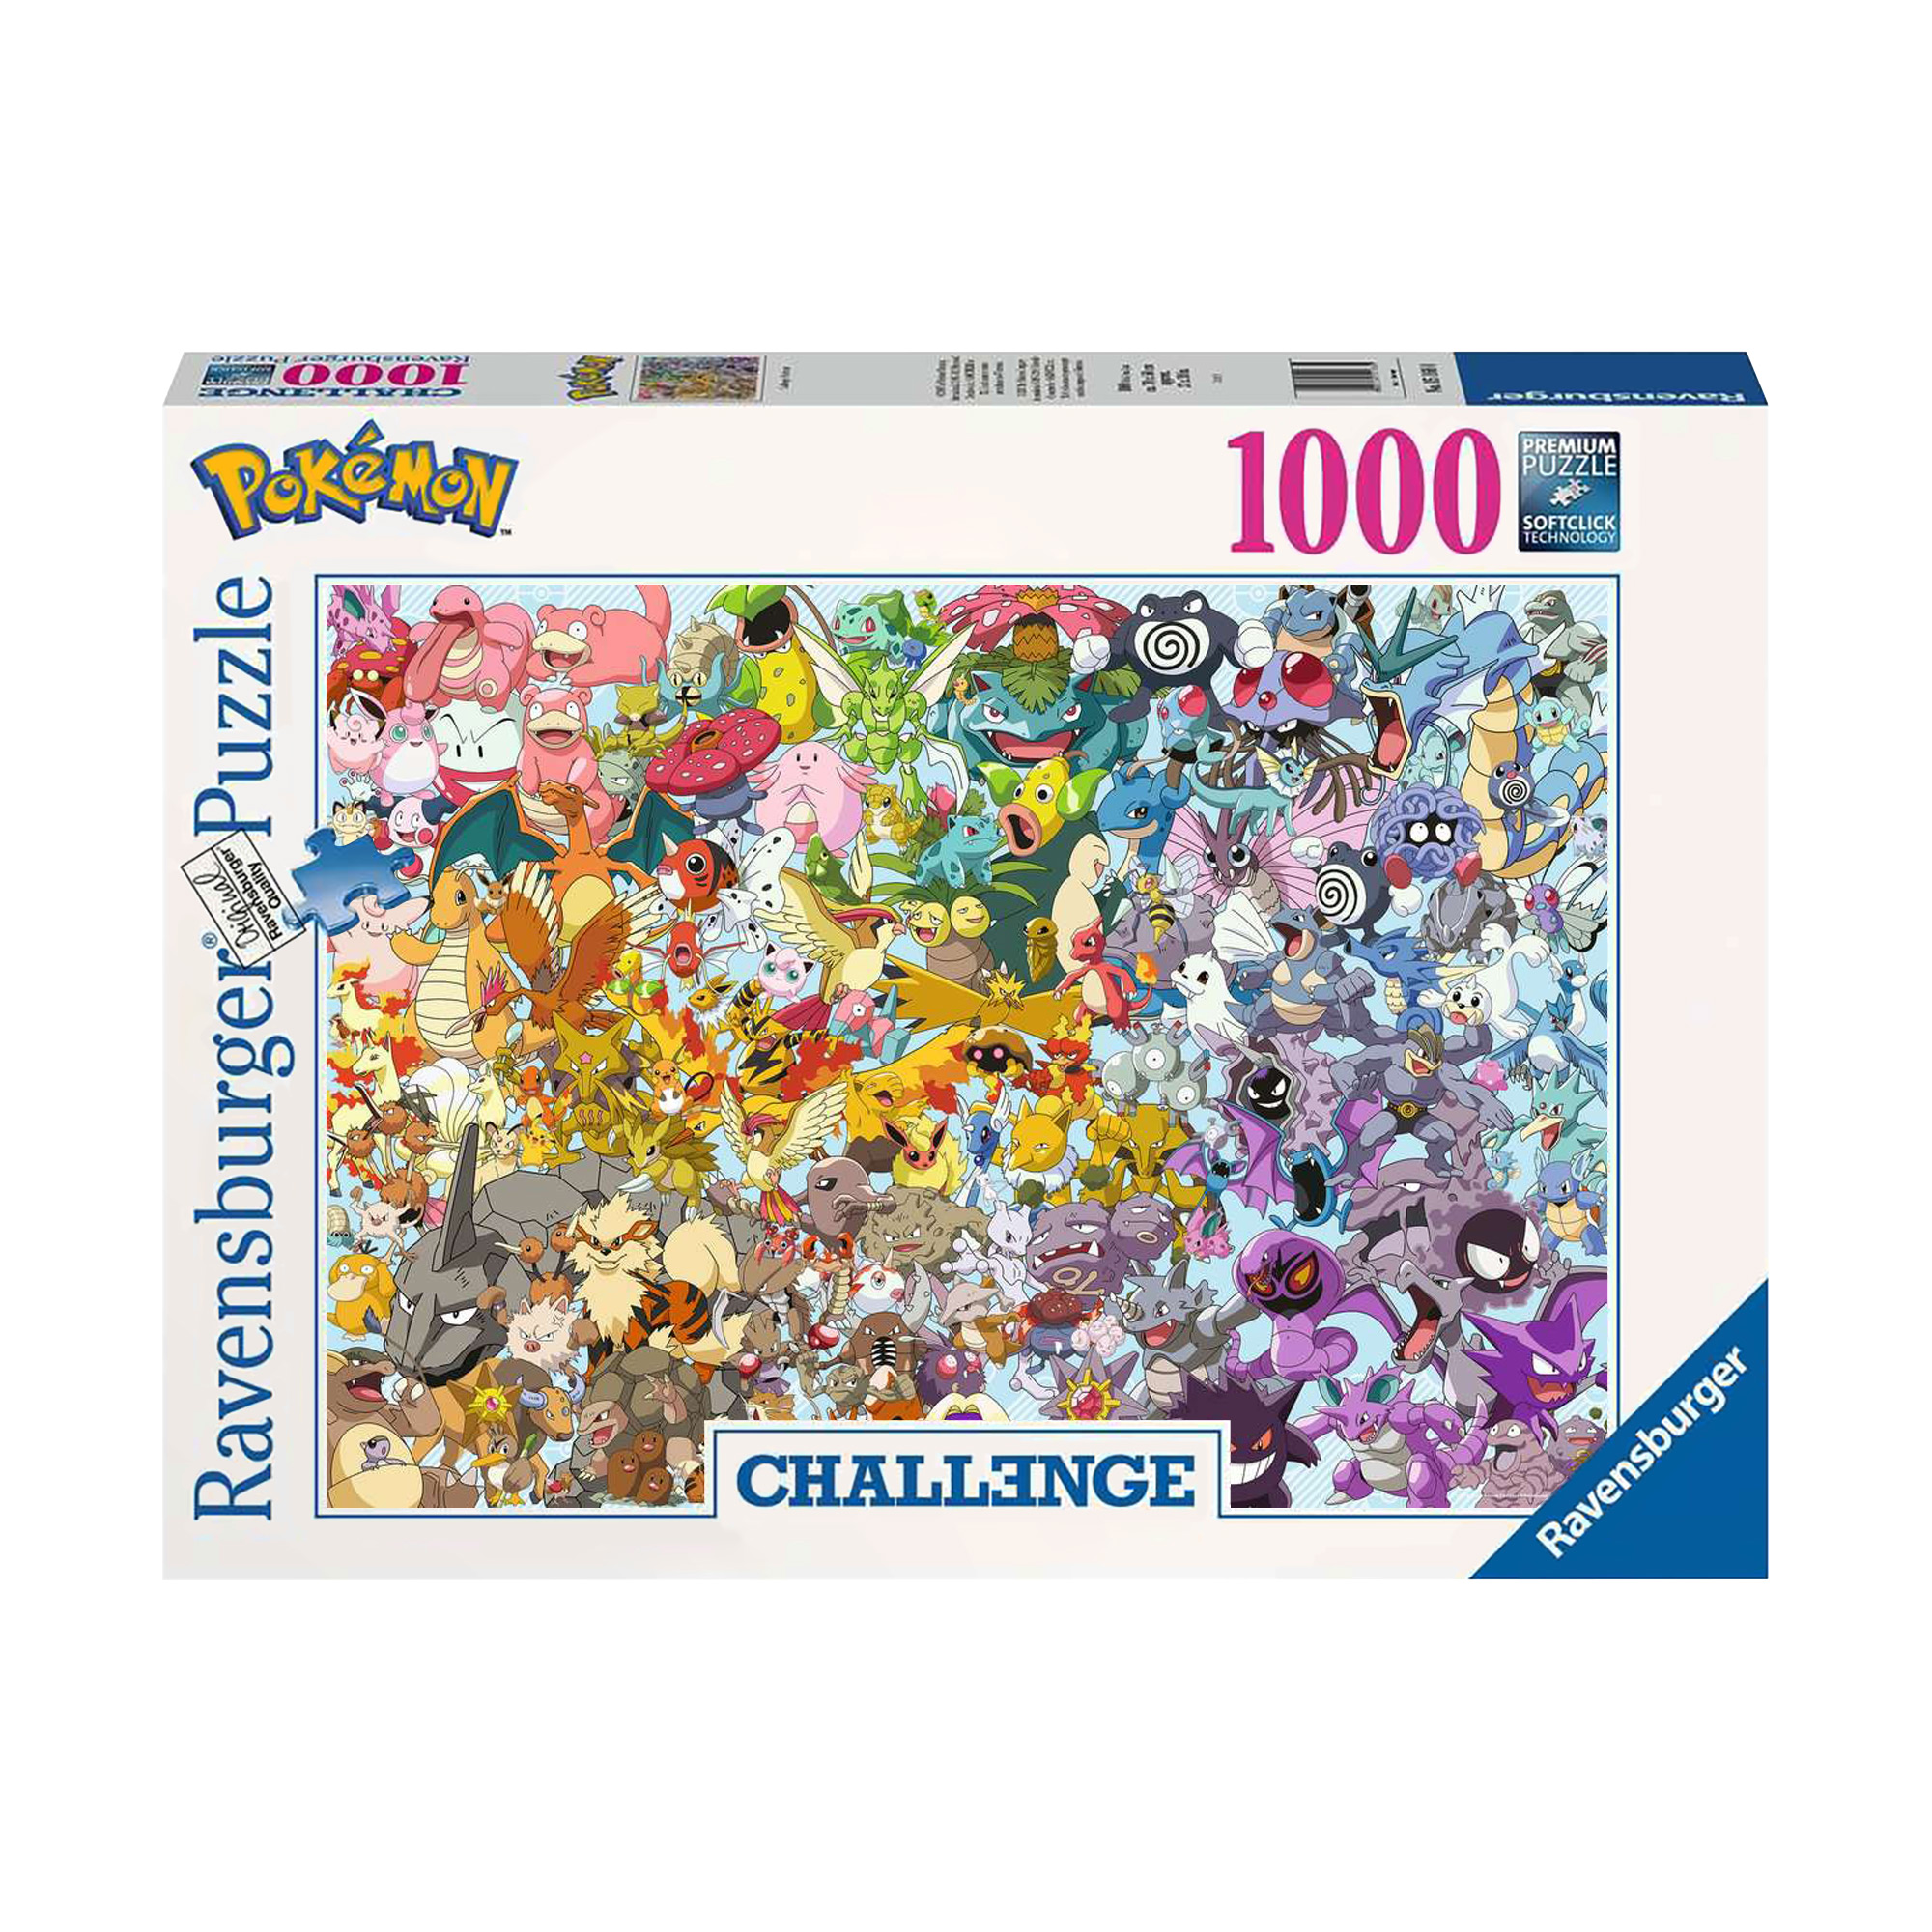 Pokémon Puzzle - 1000 Teile 1018-DH - 6